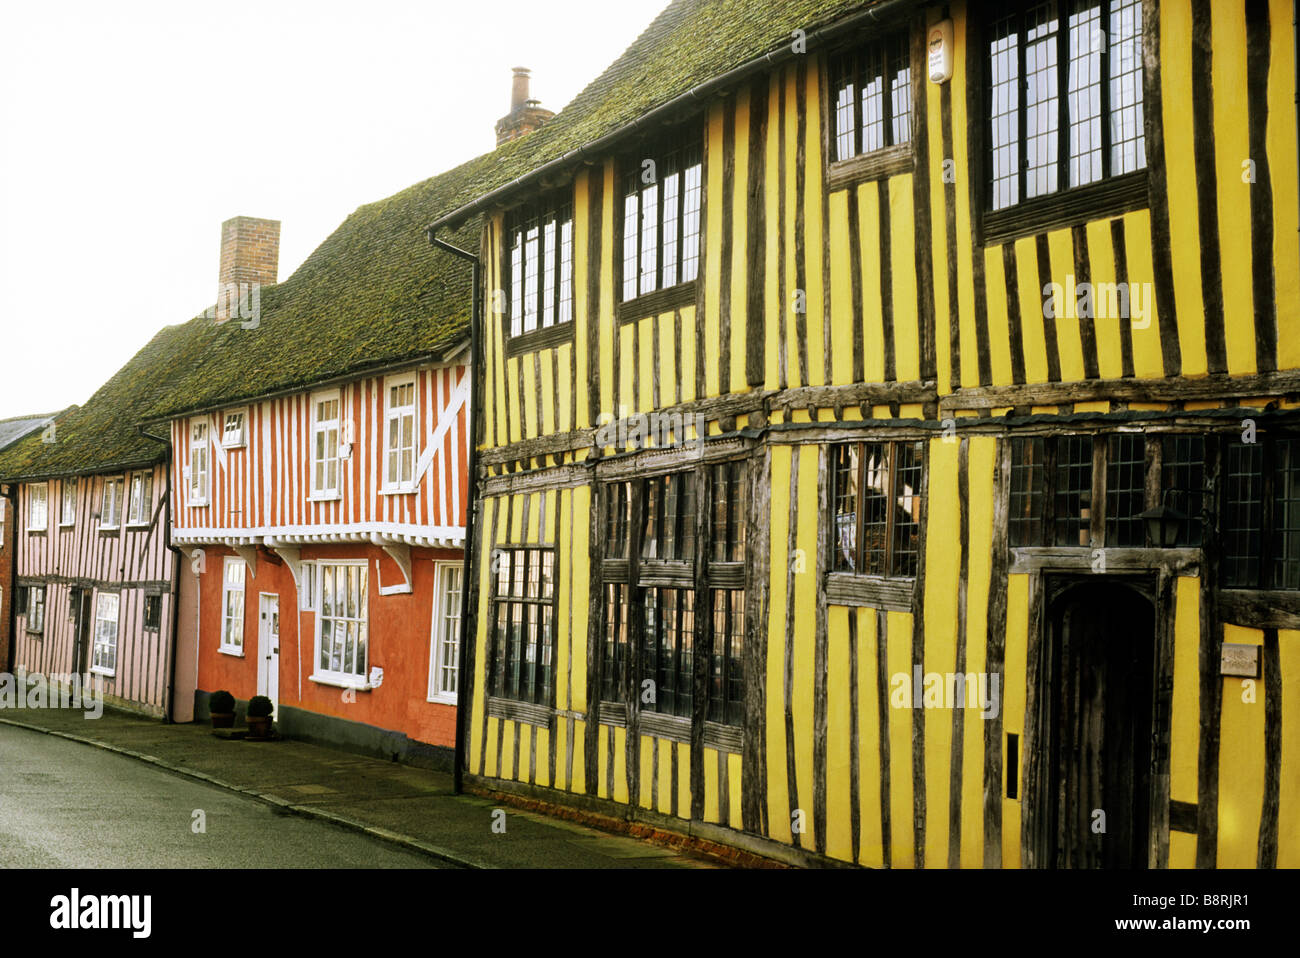 Maisons à colombages lavé couleur chambre Lavenham Suffolk Street de l'eau bâtiments classés Tudor Anglais ville laine intérieur médiéval Banque D'Images